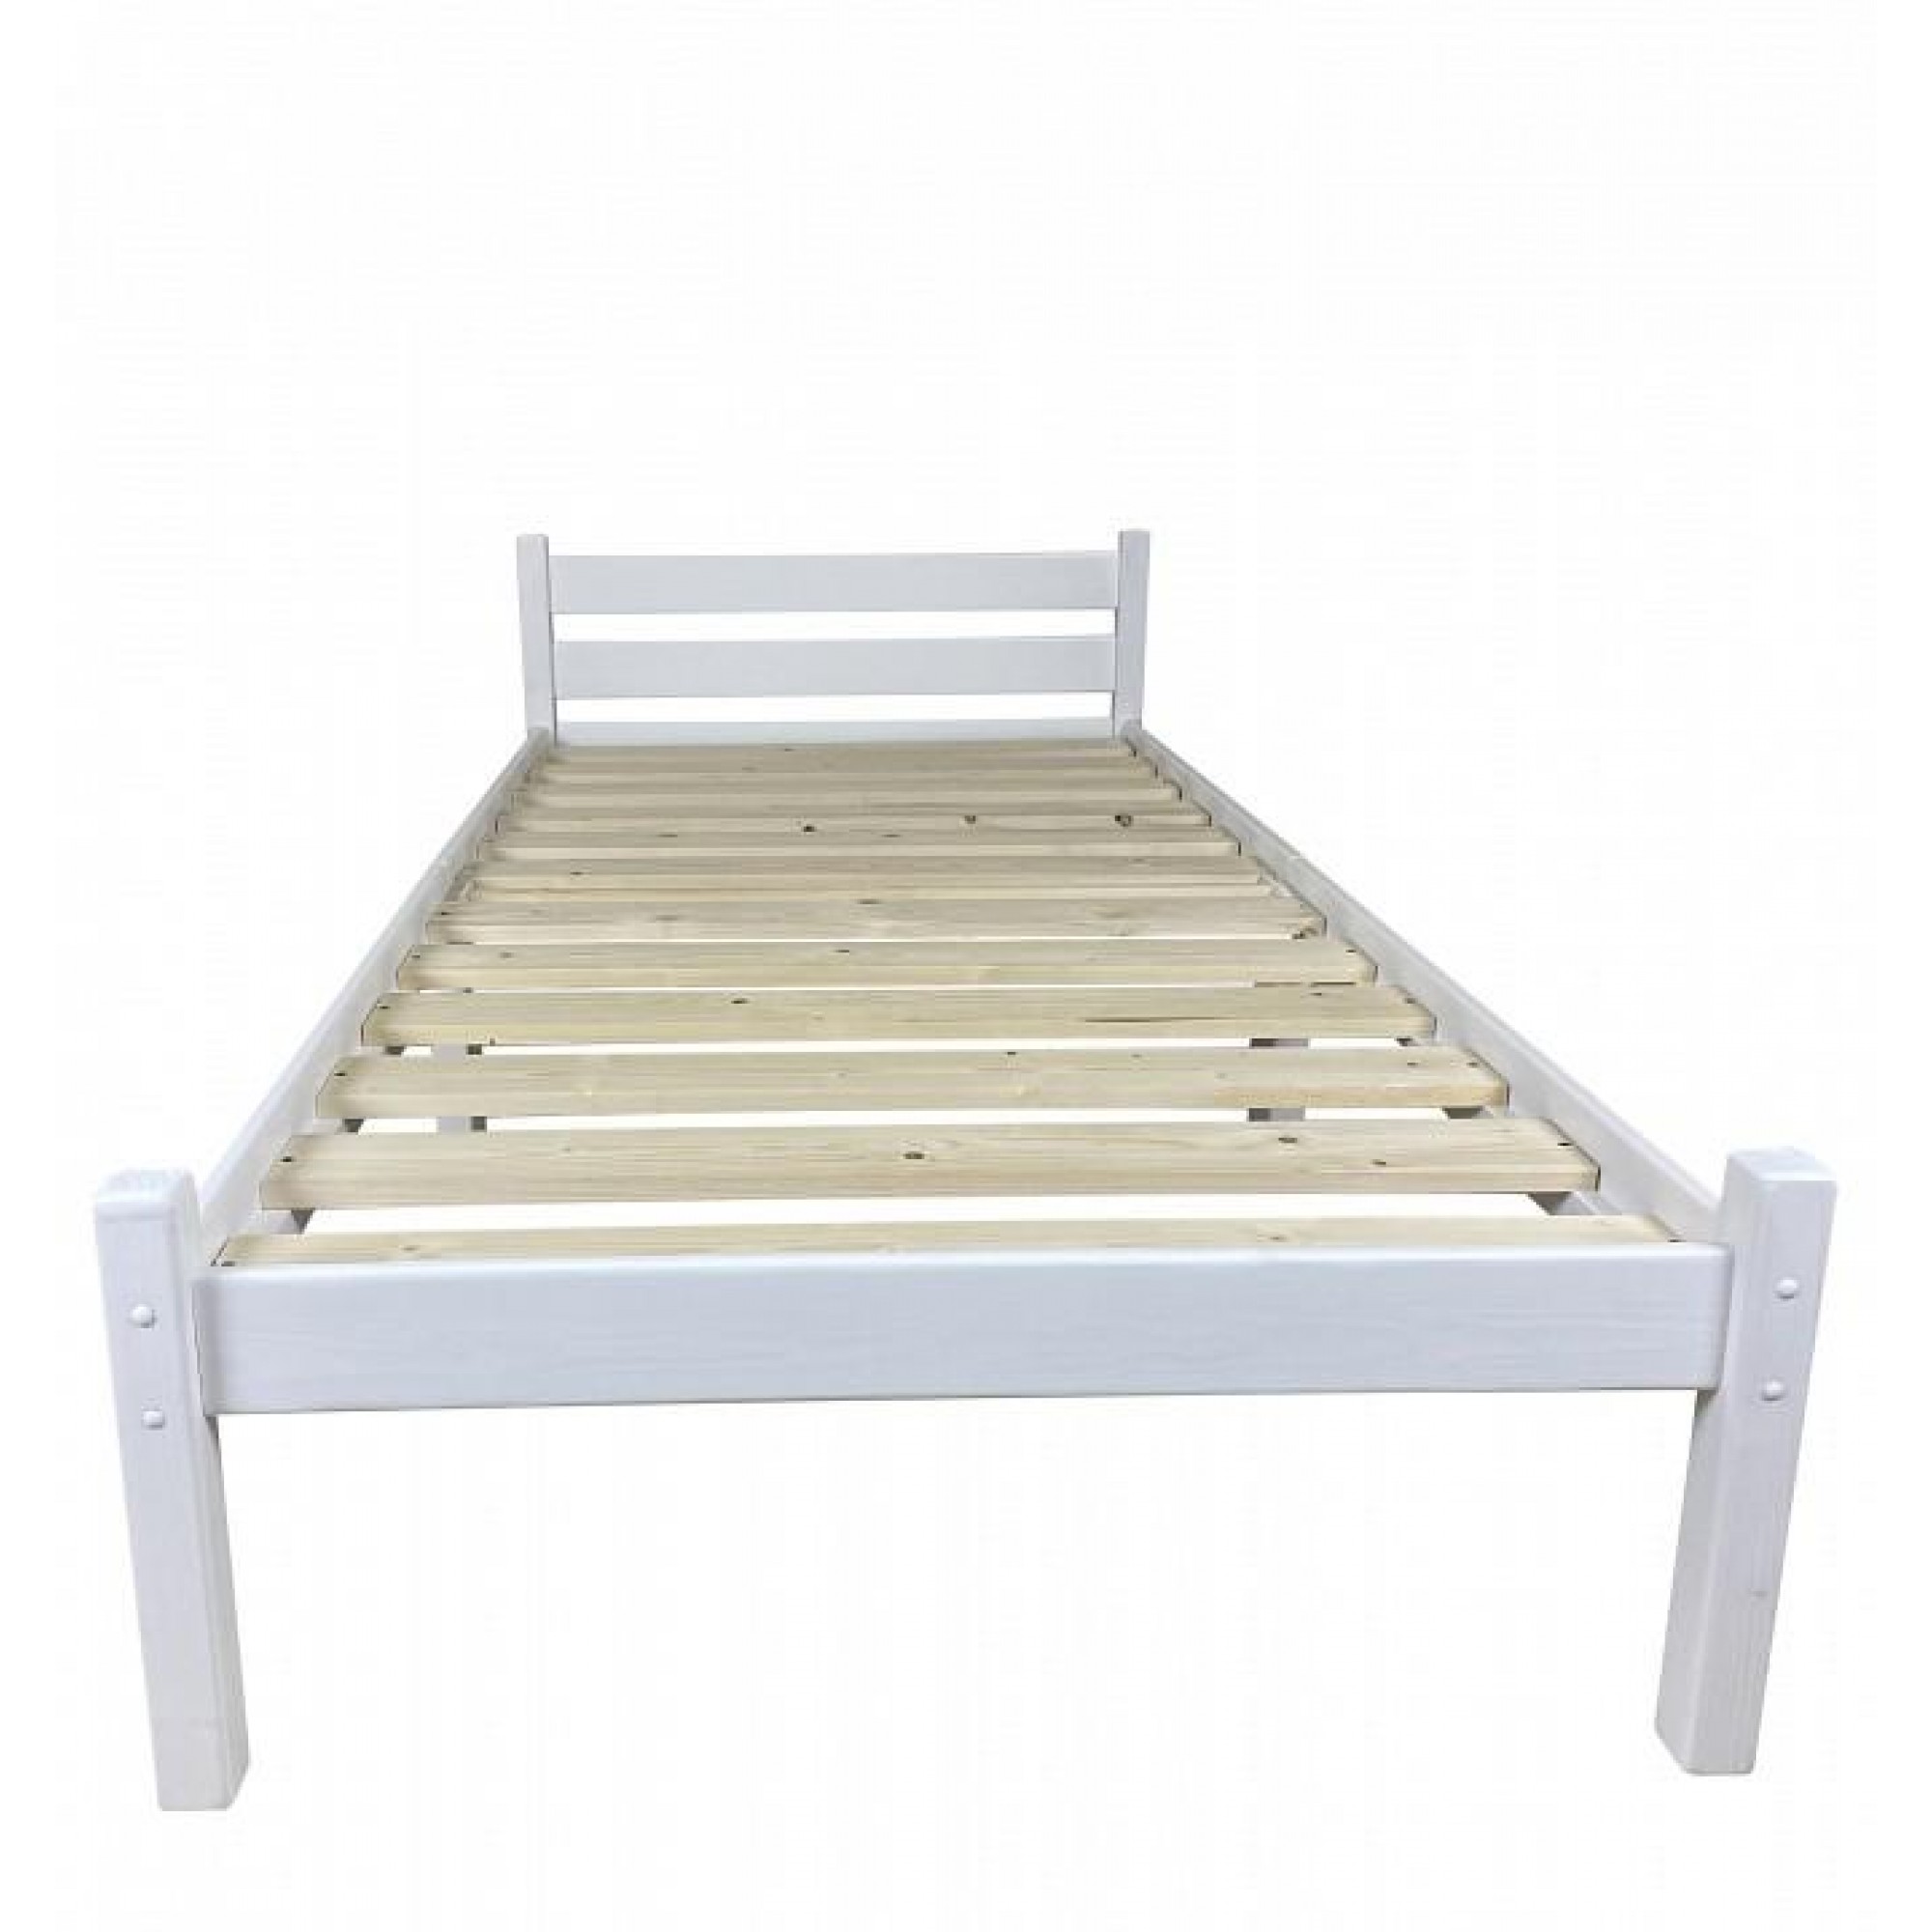 Кровать односпальная Компакт 2000x700 белый    SLR_kompakt70bel